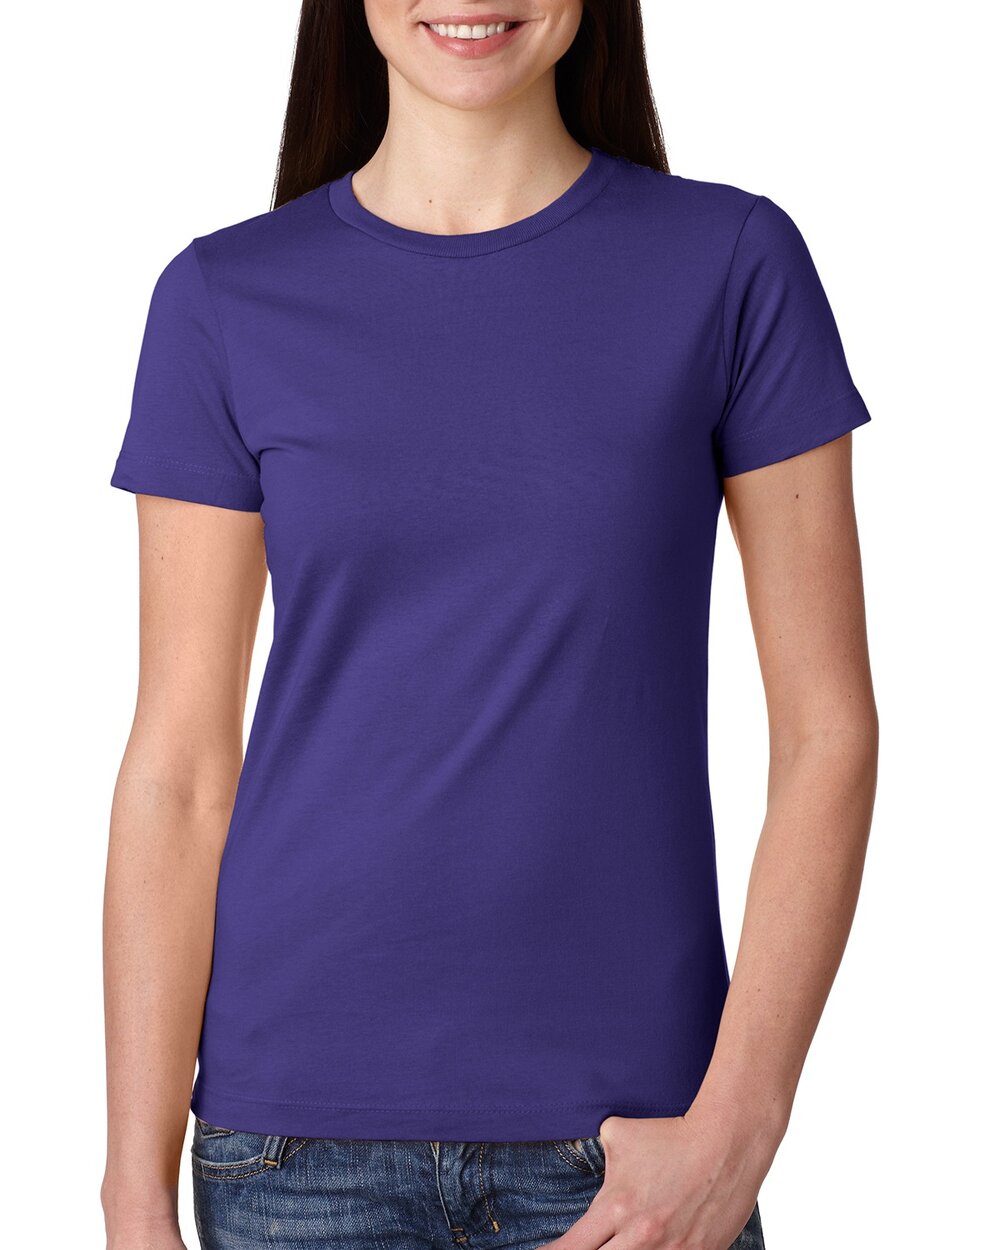 Next Level Unisex Cotton T-Shirt — Design Like Whoa